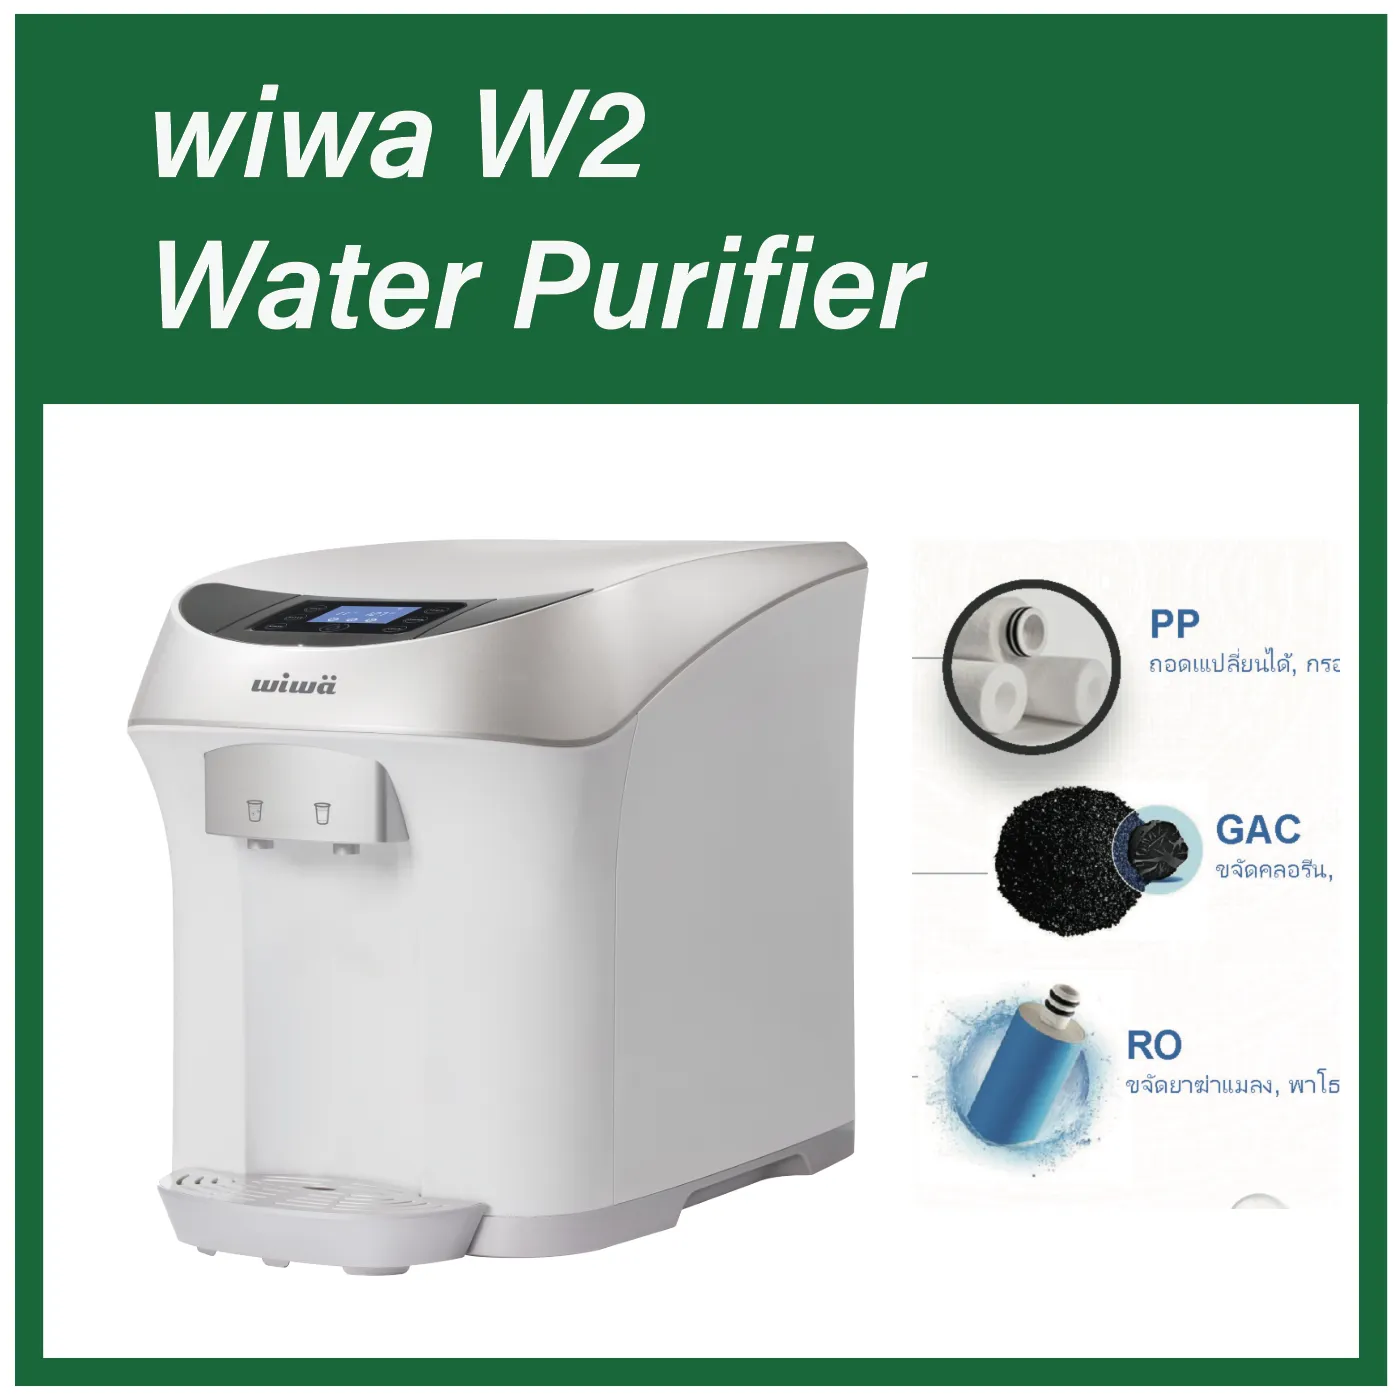 เครื่องกรองน้ำ WIWÄ - Water purifier รุ่นW2 -เครื่องกรองน้ํา/ชุดไส้กรองน้ํา 3 ขั้นตอน/ WIWA water purifier - Water purifier model W2 - water purifier / water filter set 3 steps /